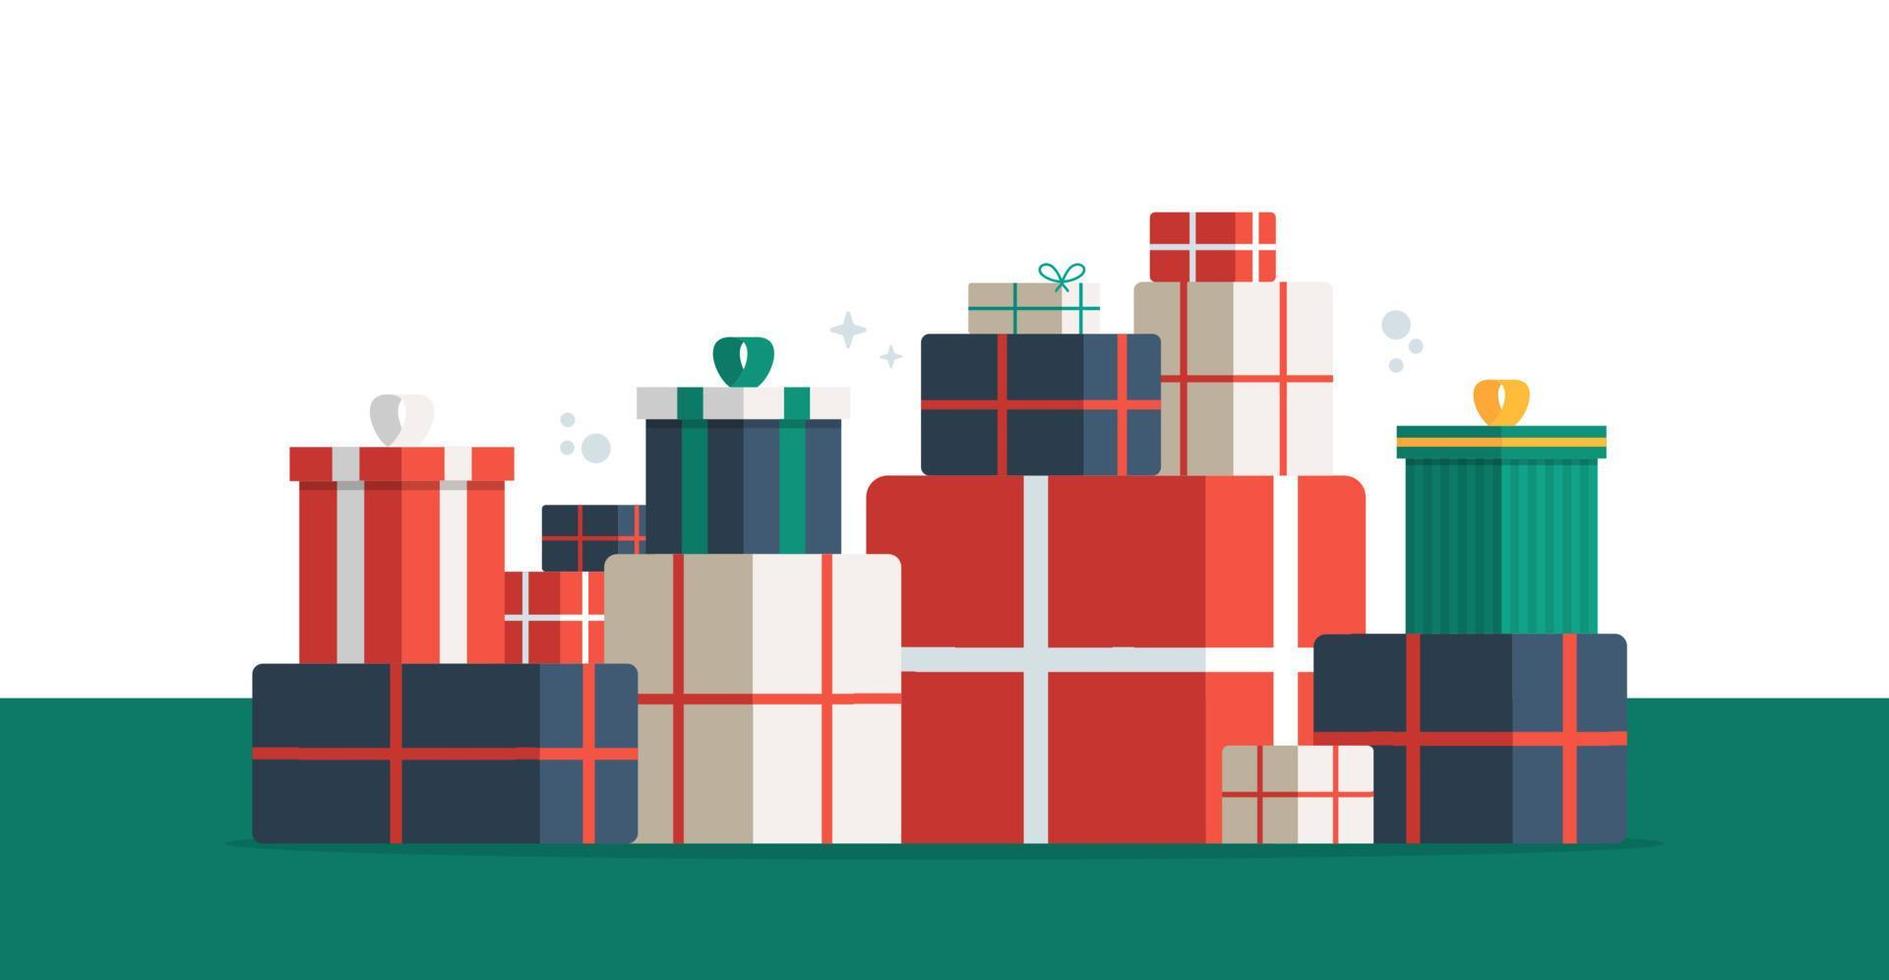 Stapeln Sie bunte Geschenk- oder Geschenkboxen mit Band- und Bogenvektorsatz. Geschenkboxstapel oder -stapel. Weihnachts- oder Geburtstagsgeschenk-Design. Weihnachtsboxen mit Band und Schleife. Vektor-Illustration. vektor